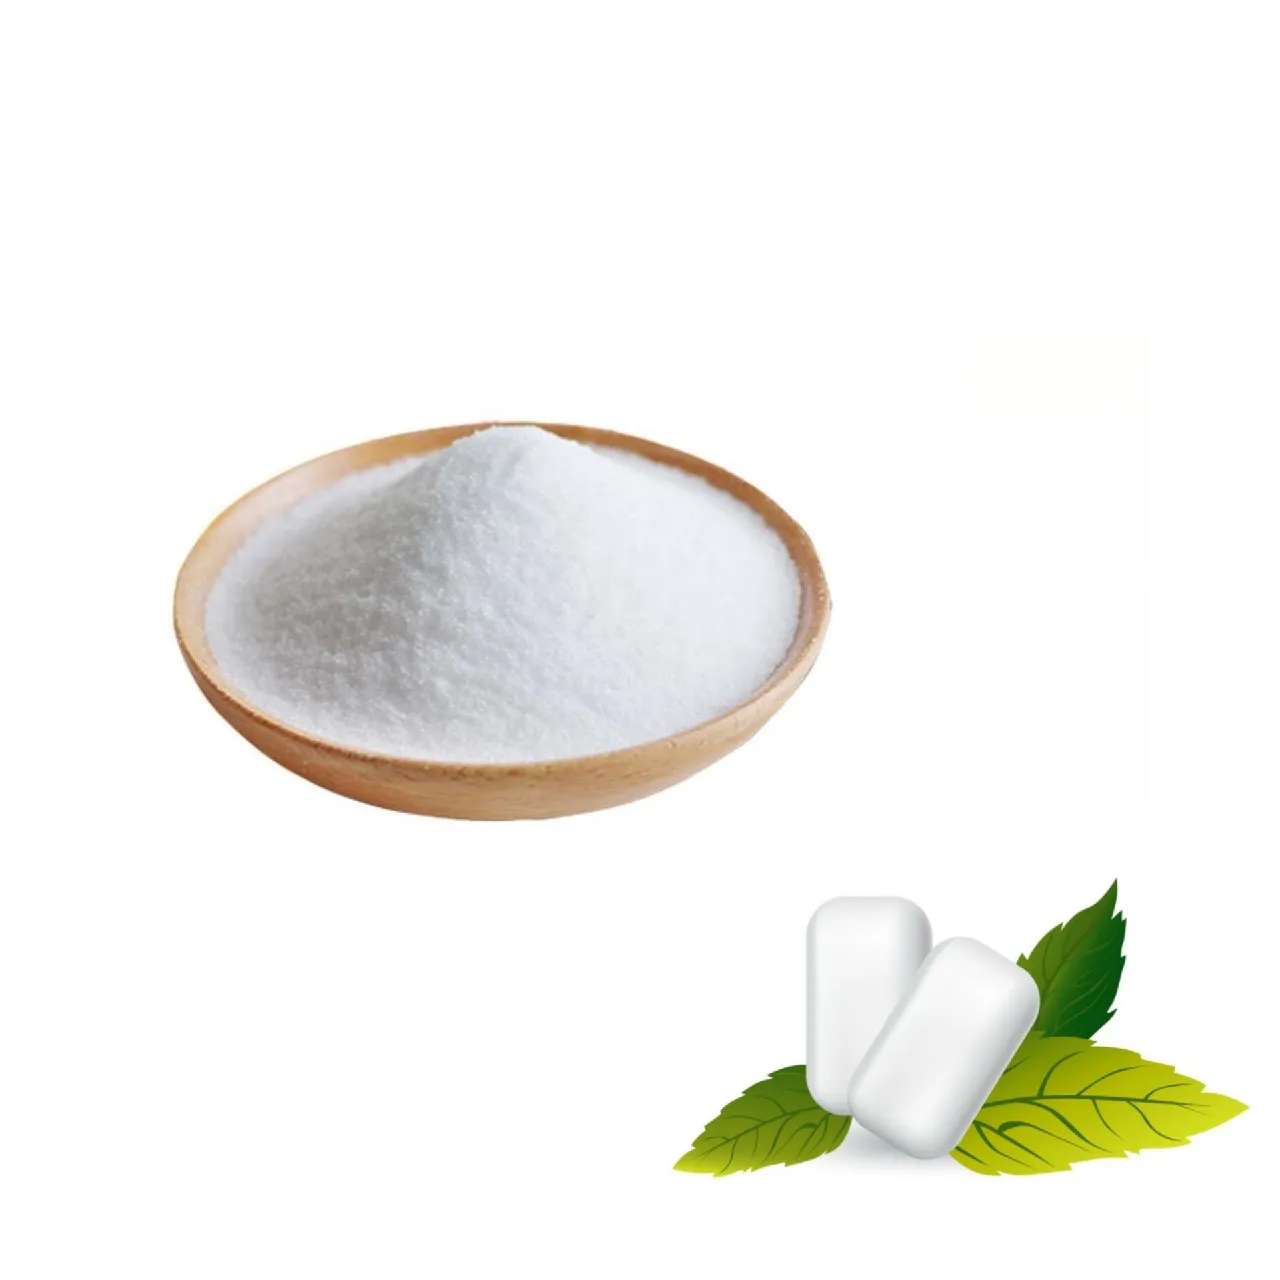 Commercio all'ingrosso di alta qualità xilitolo organico senza zucchero additivi alimentari xilitolo in polvere